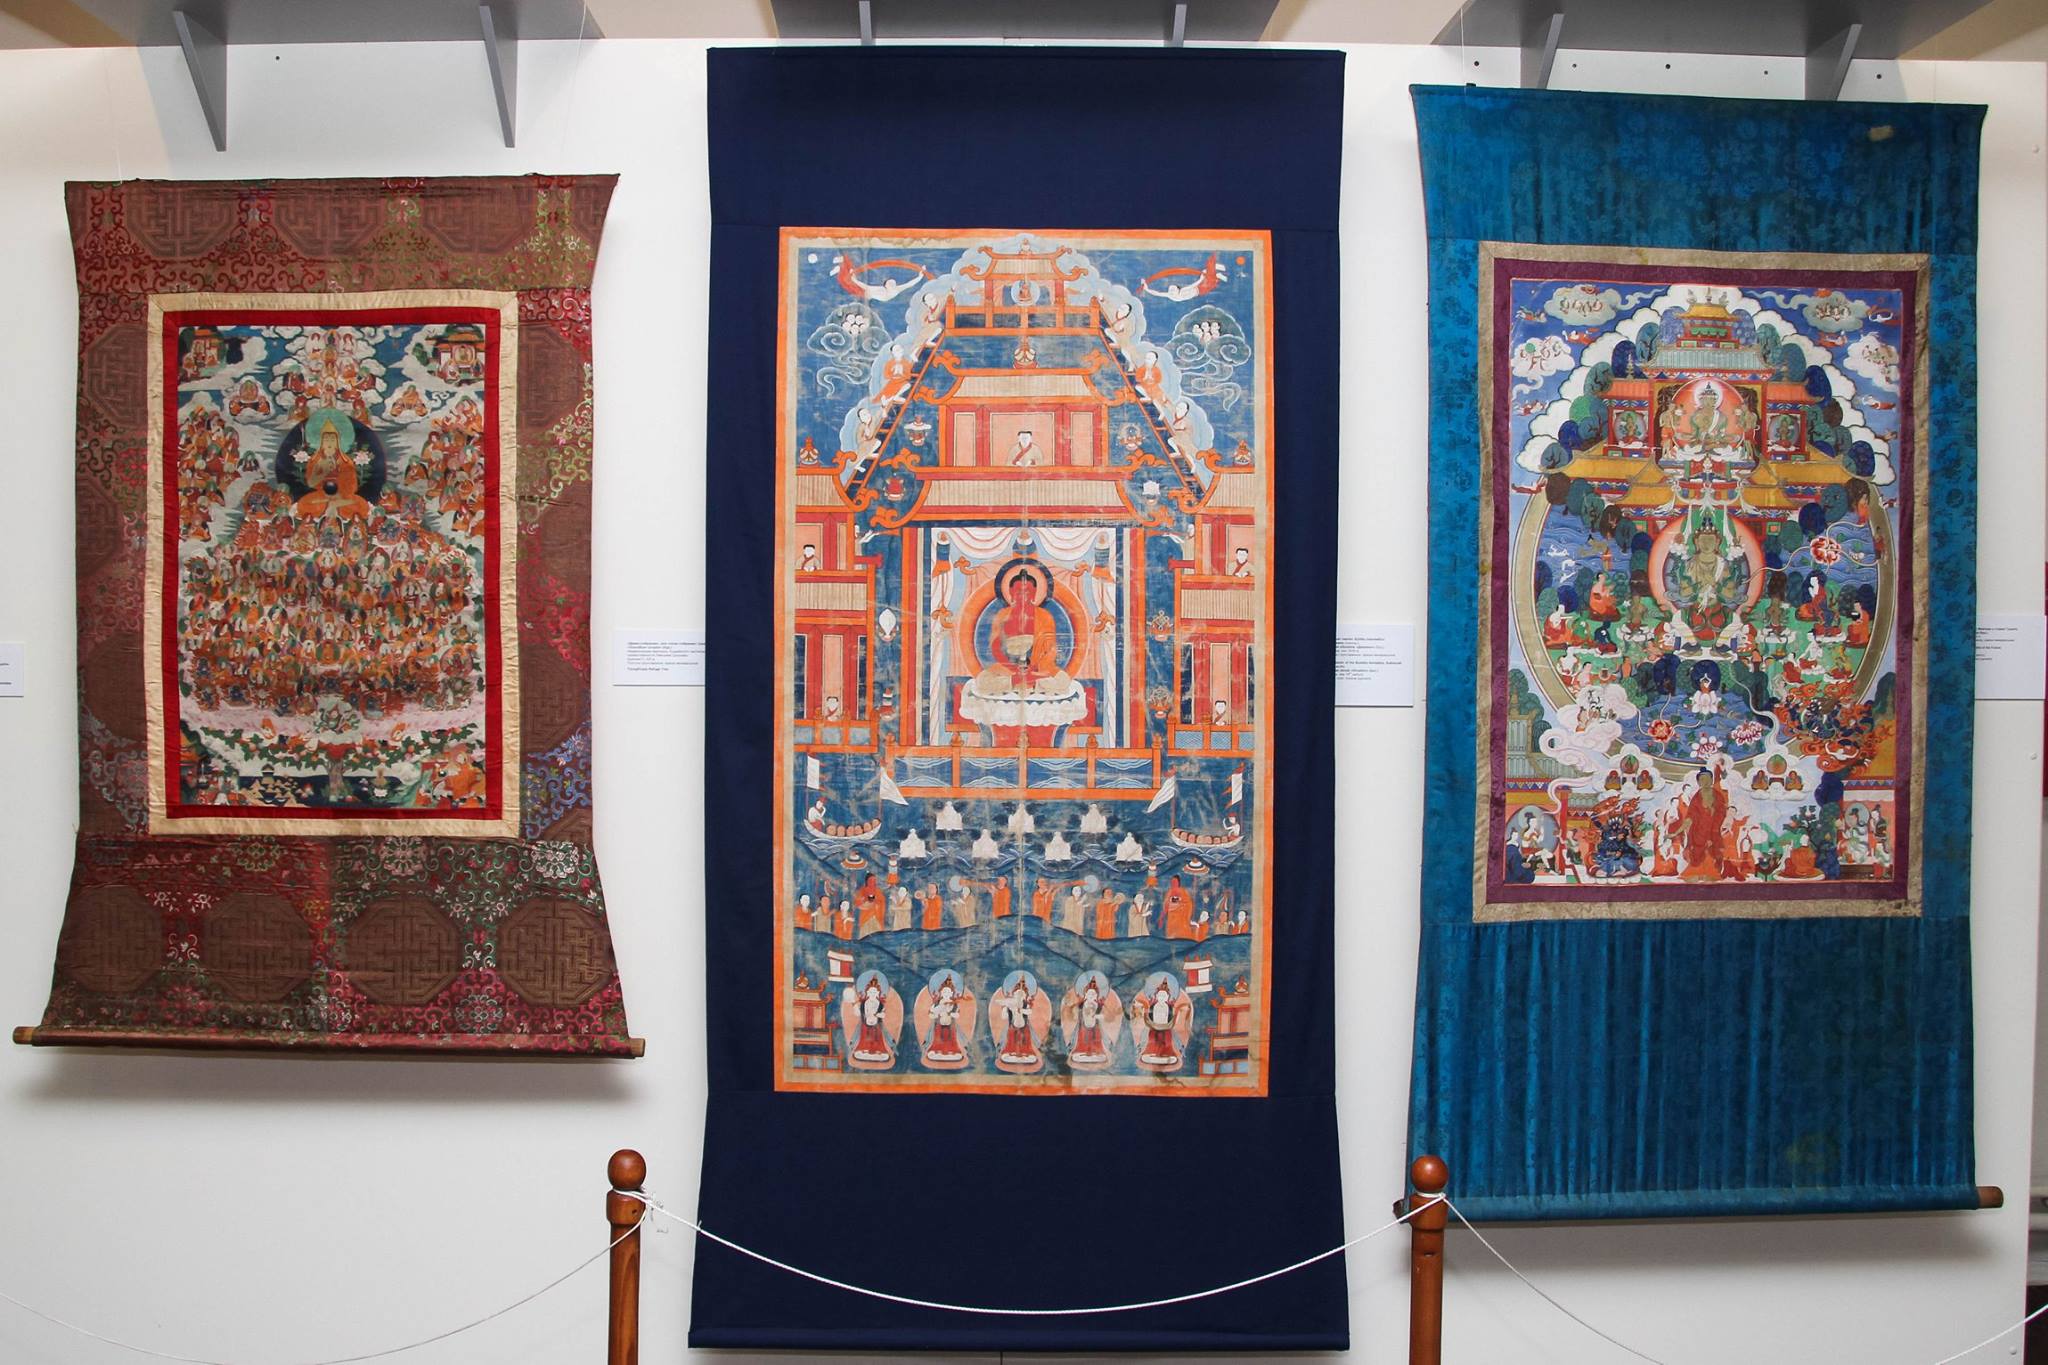 26 апреля 2016 г. в Музее истории Бурятии им. М.Н. Хангалова открылась выставка «Три резиденции Пандито Хамбо лам».